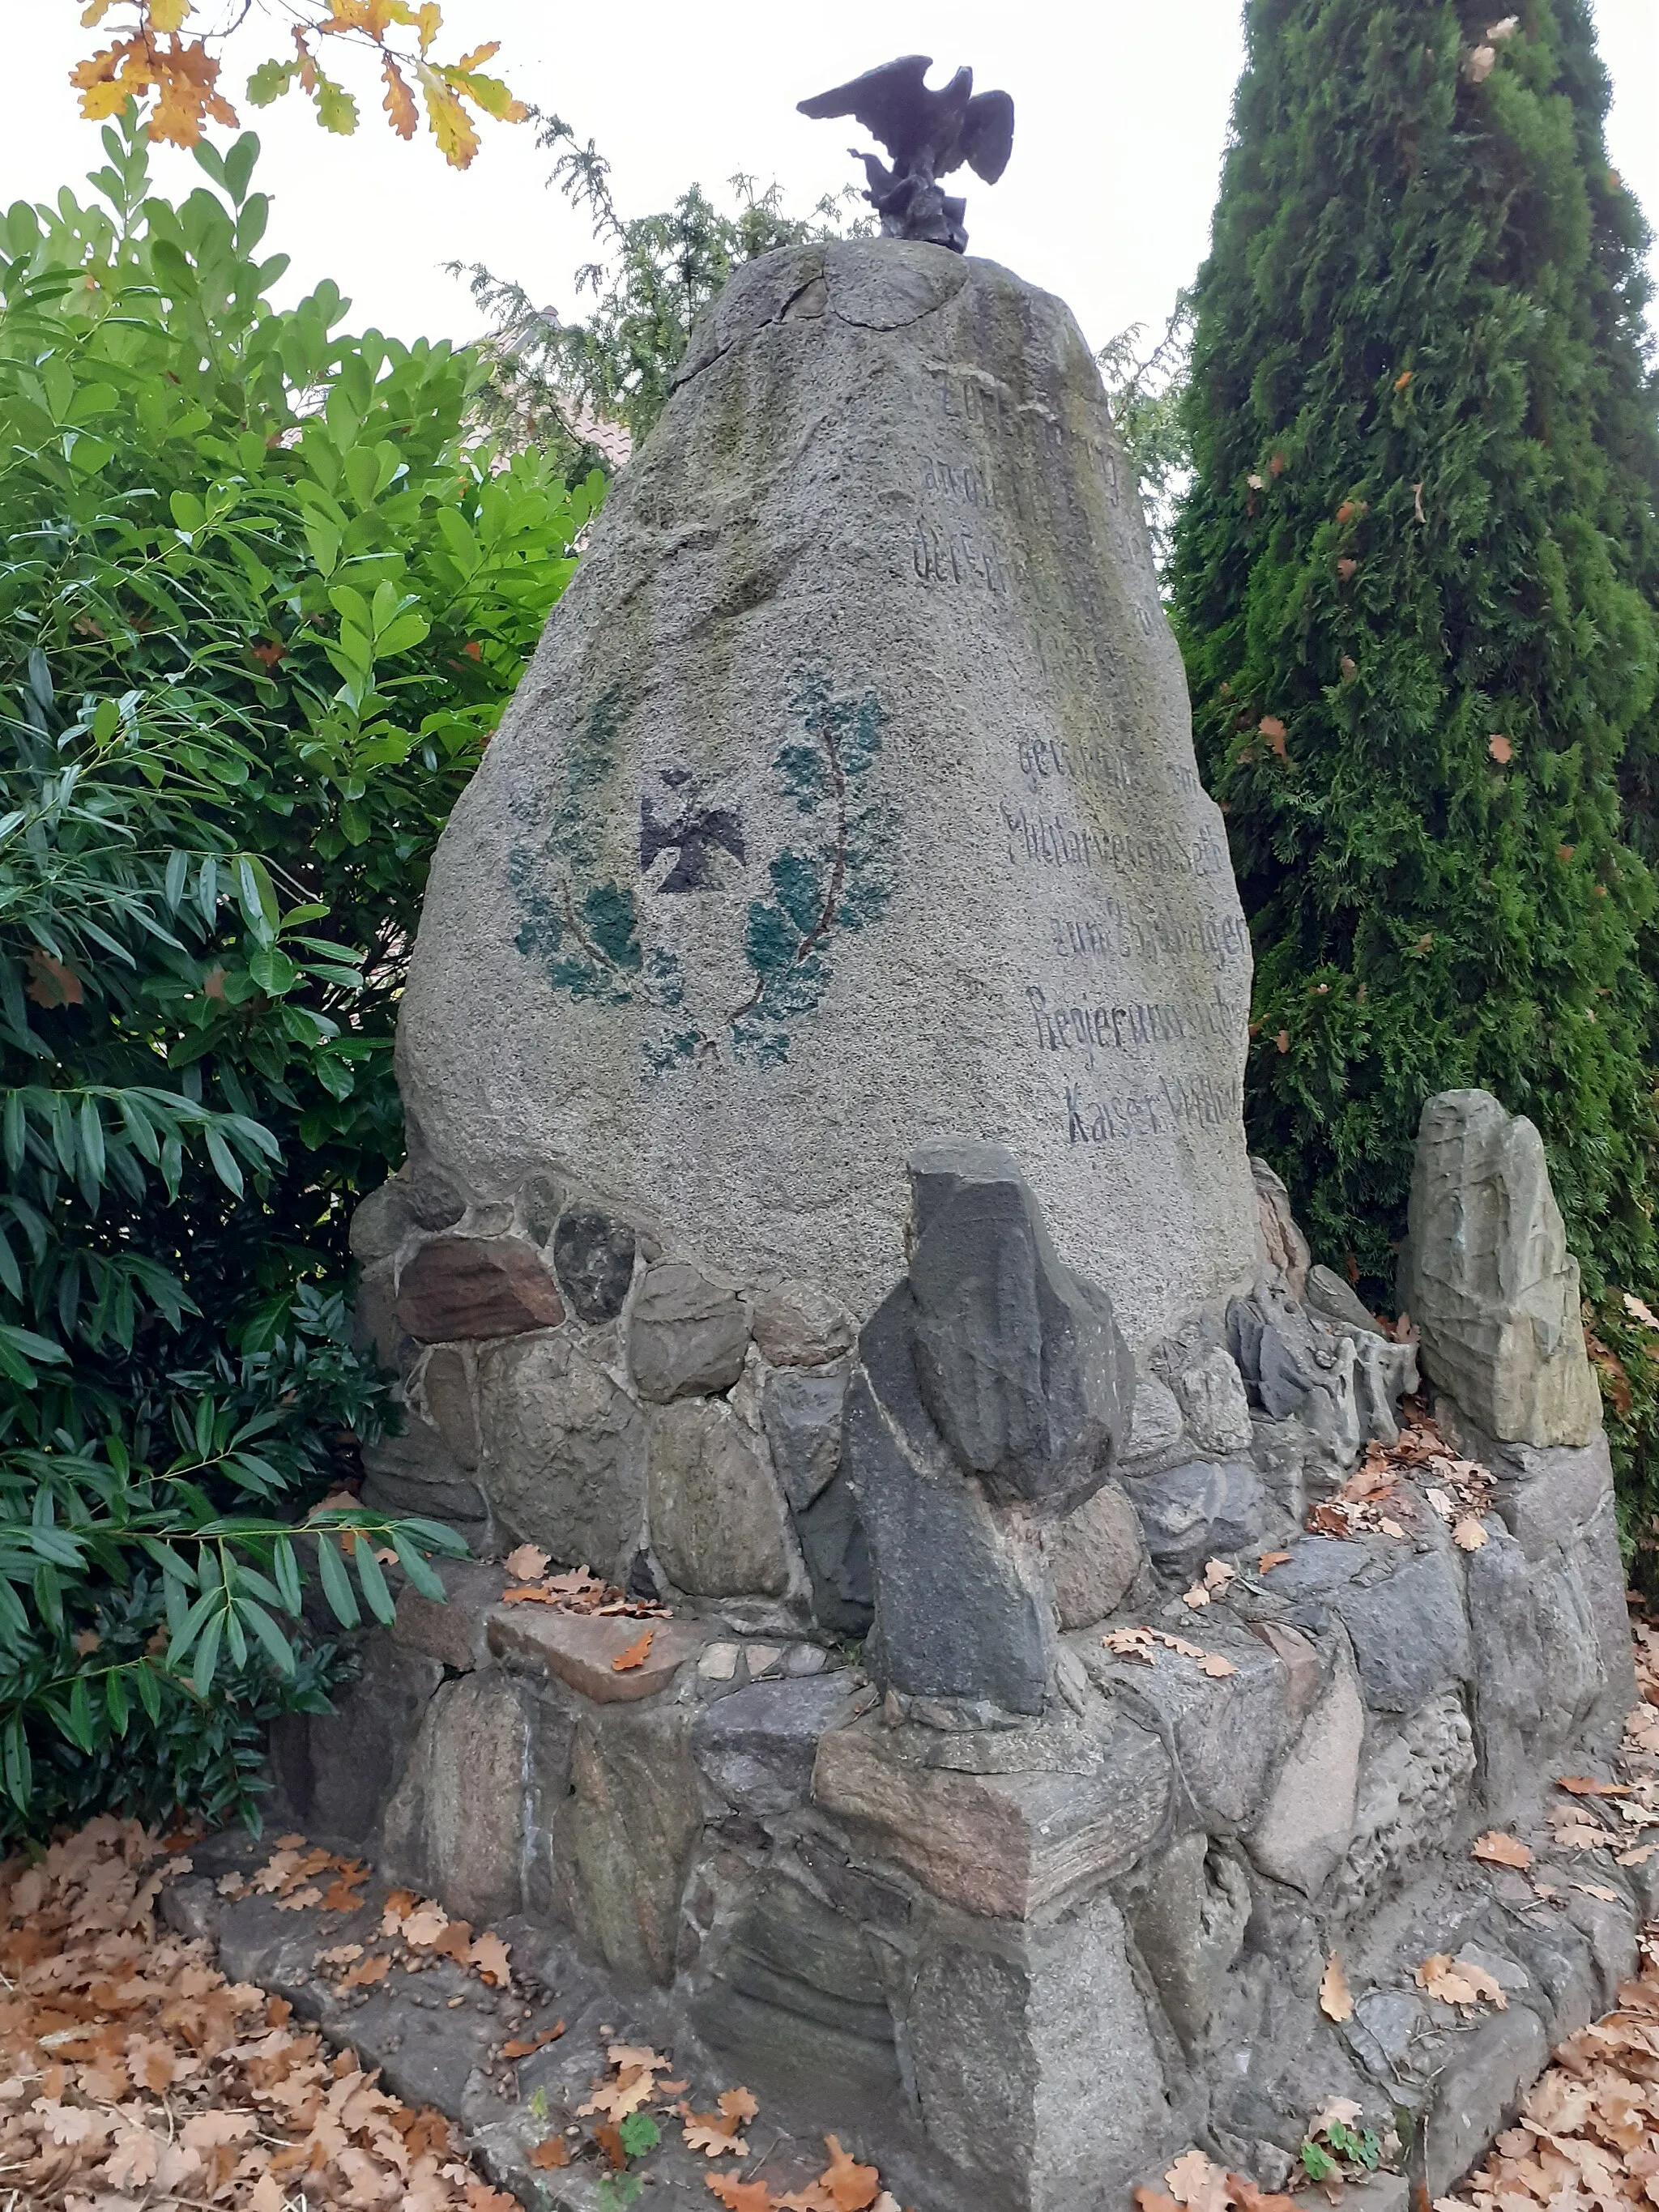 Photo showing: Denkmal zur Erinnerung an 1813 -  gewidmet vom Militärverein Seth zum 25jährigen Regierungsjubiläum Kaiser Wilhelm II. in Seth (Holstein)